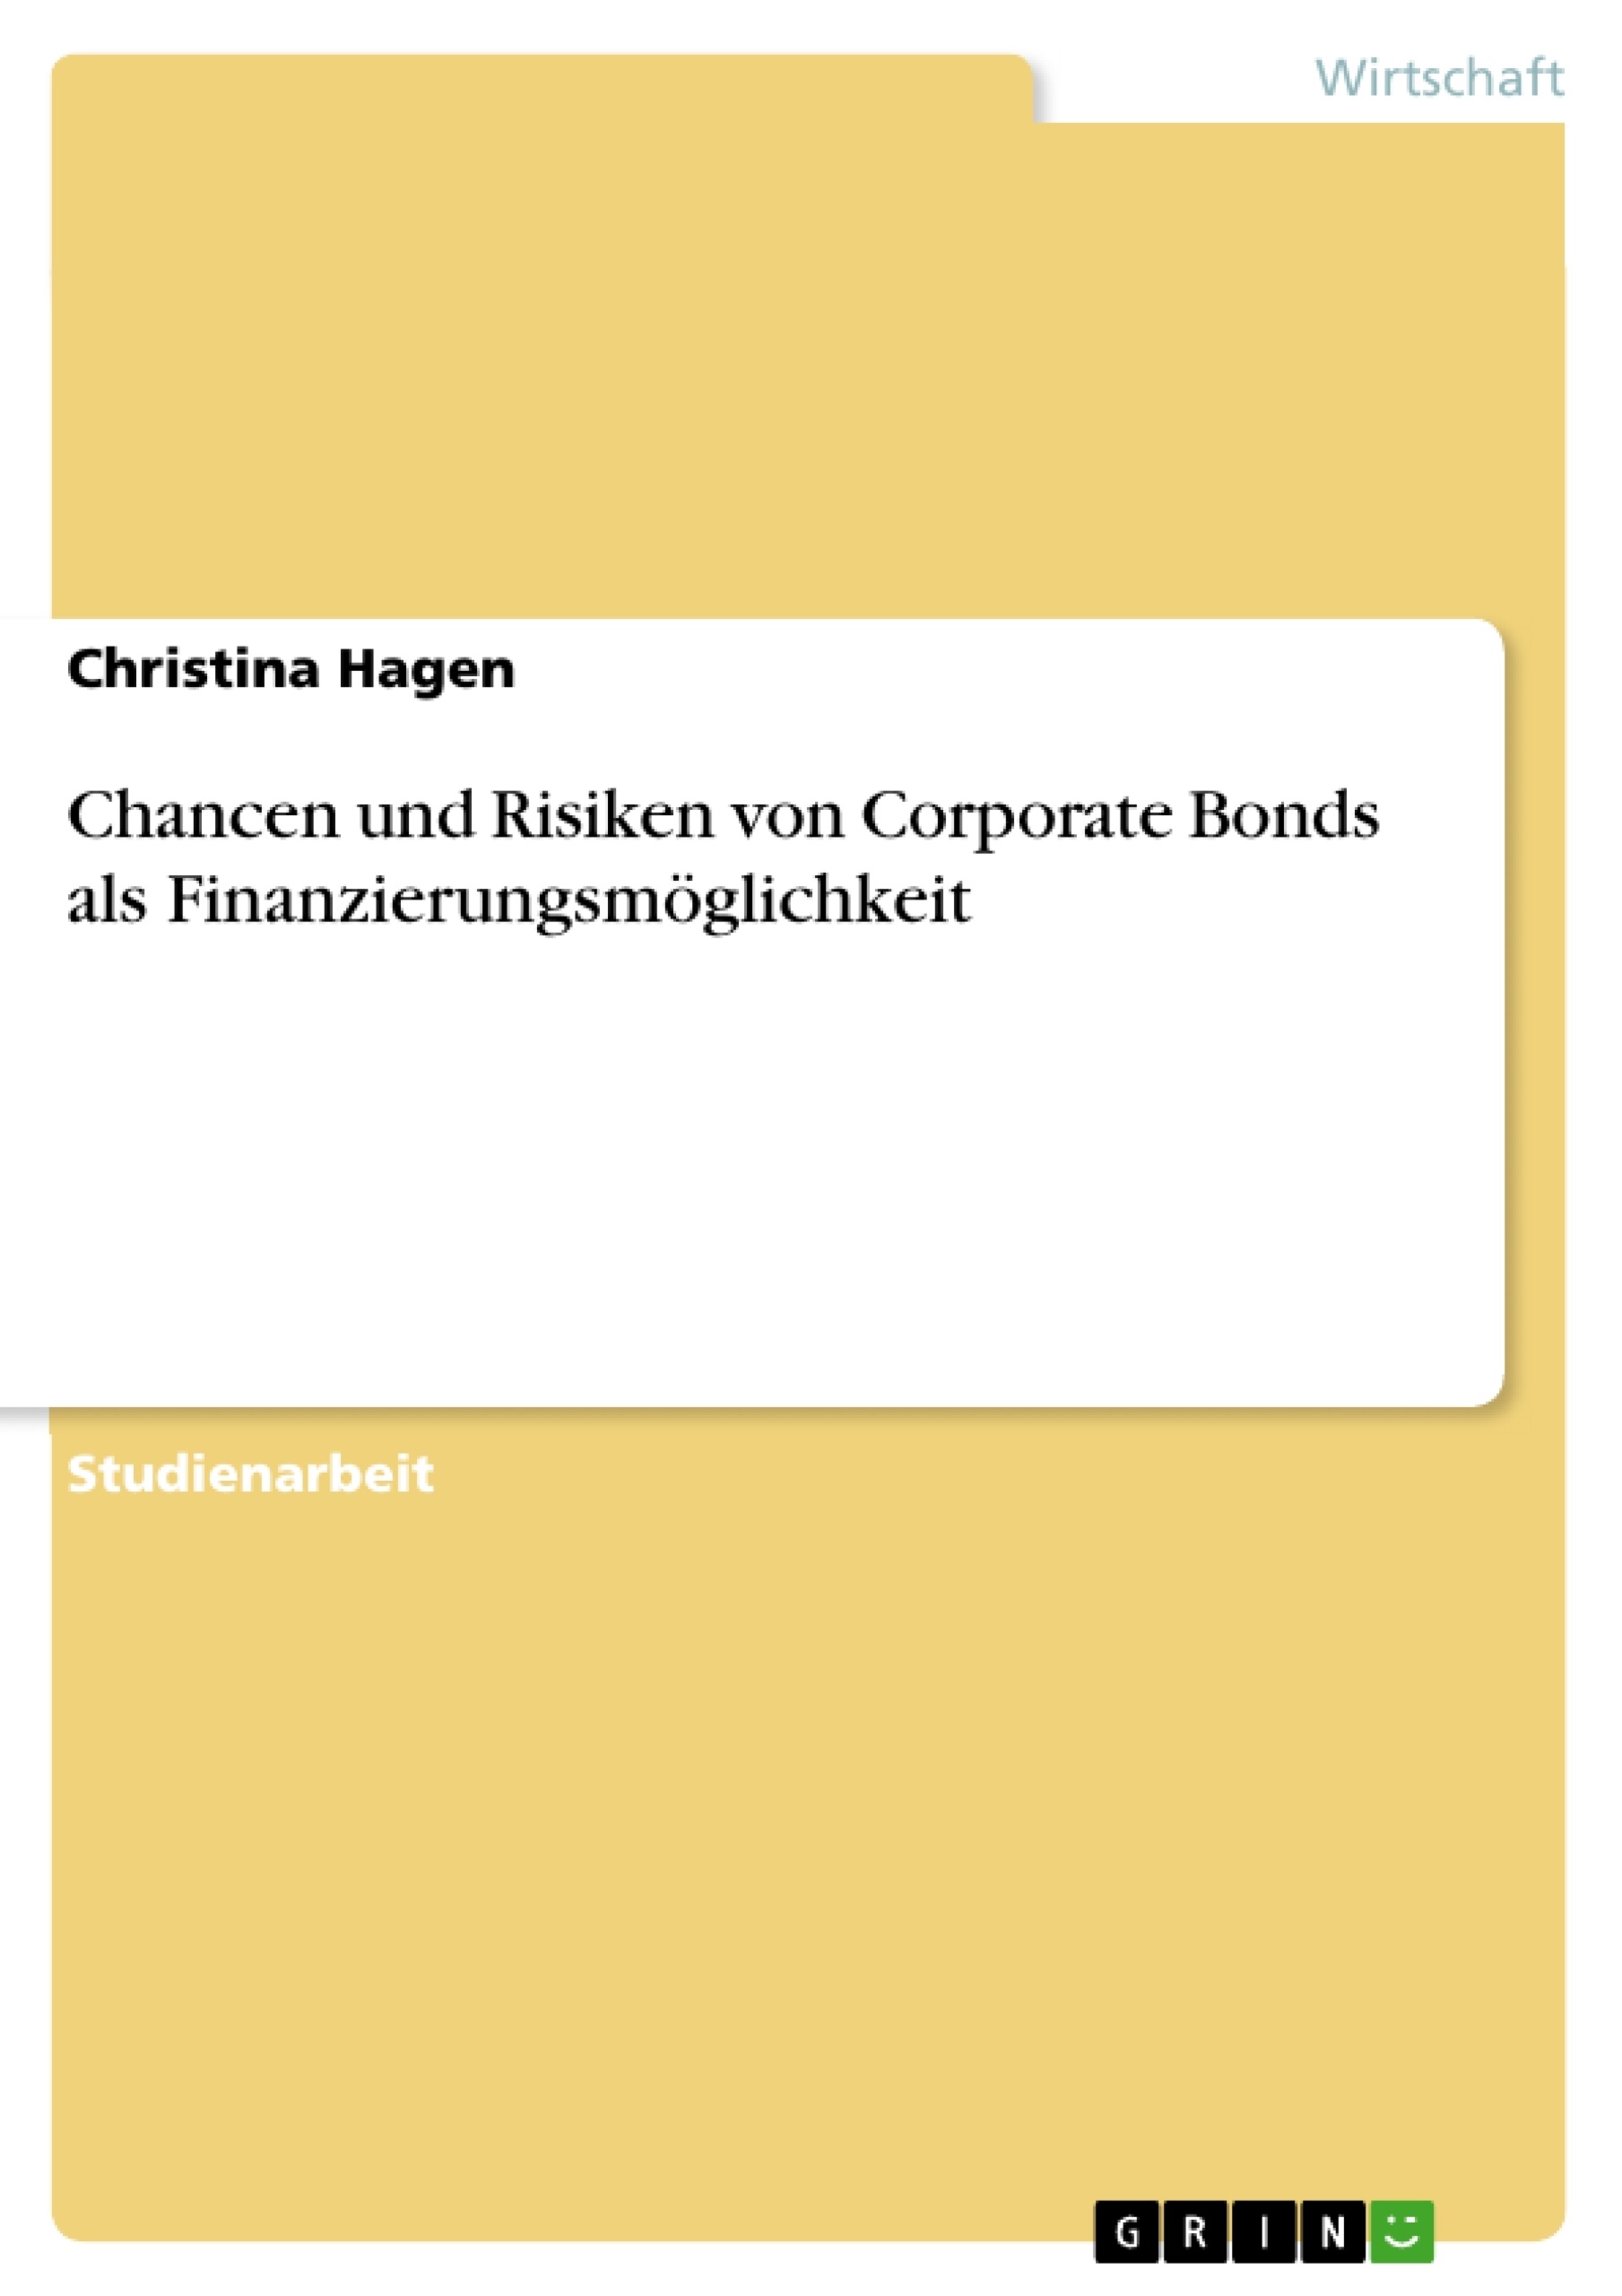 Titre: Chancen und Risiken von Corporate Bonds als Finanzierungsmöglichkeit